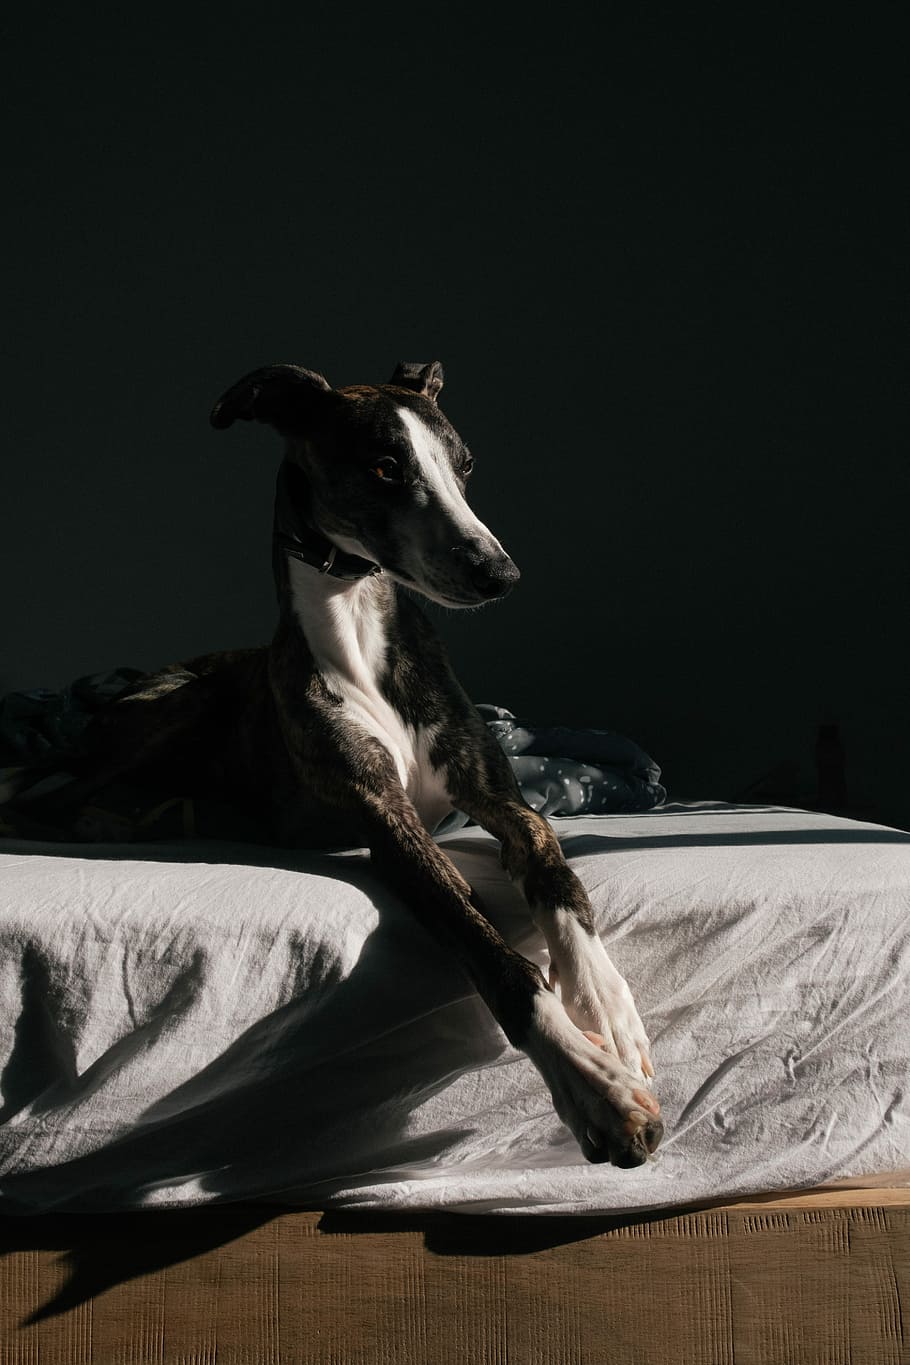 short-coated black and white dog lying on white mattress, gray dog lying on bed